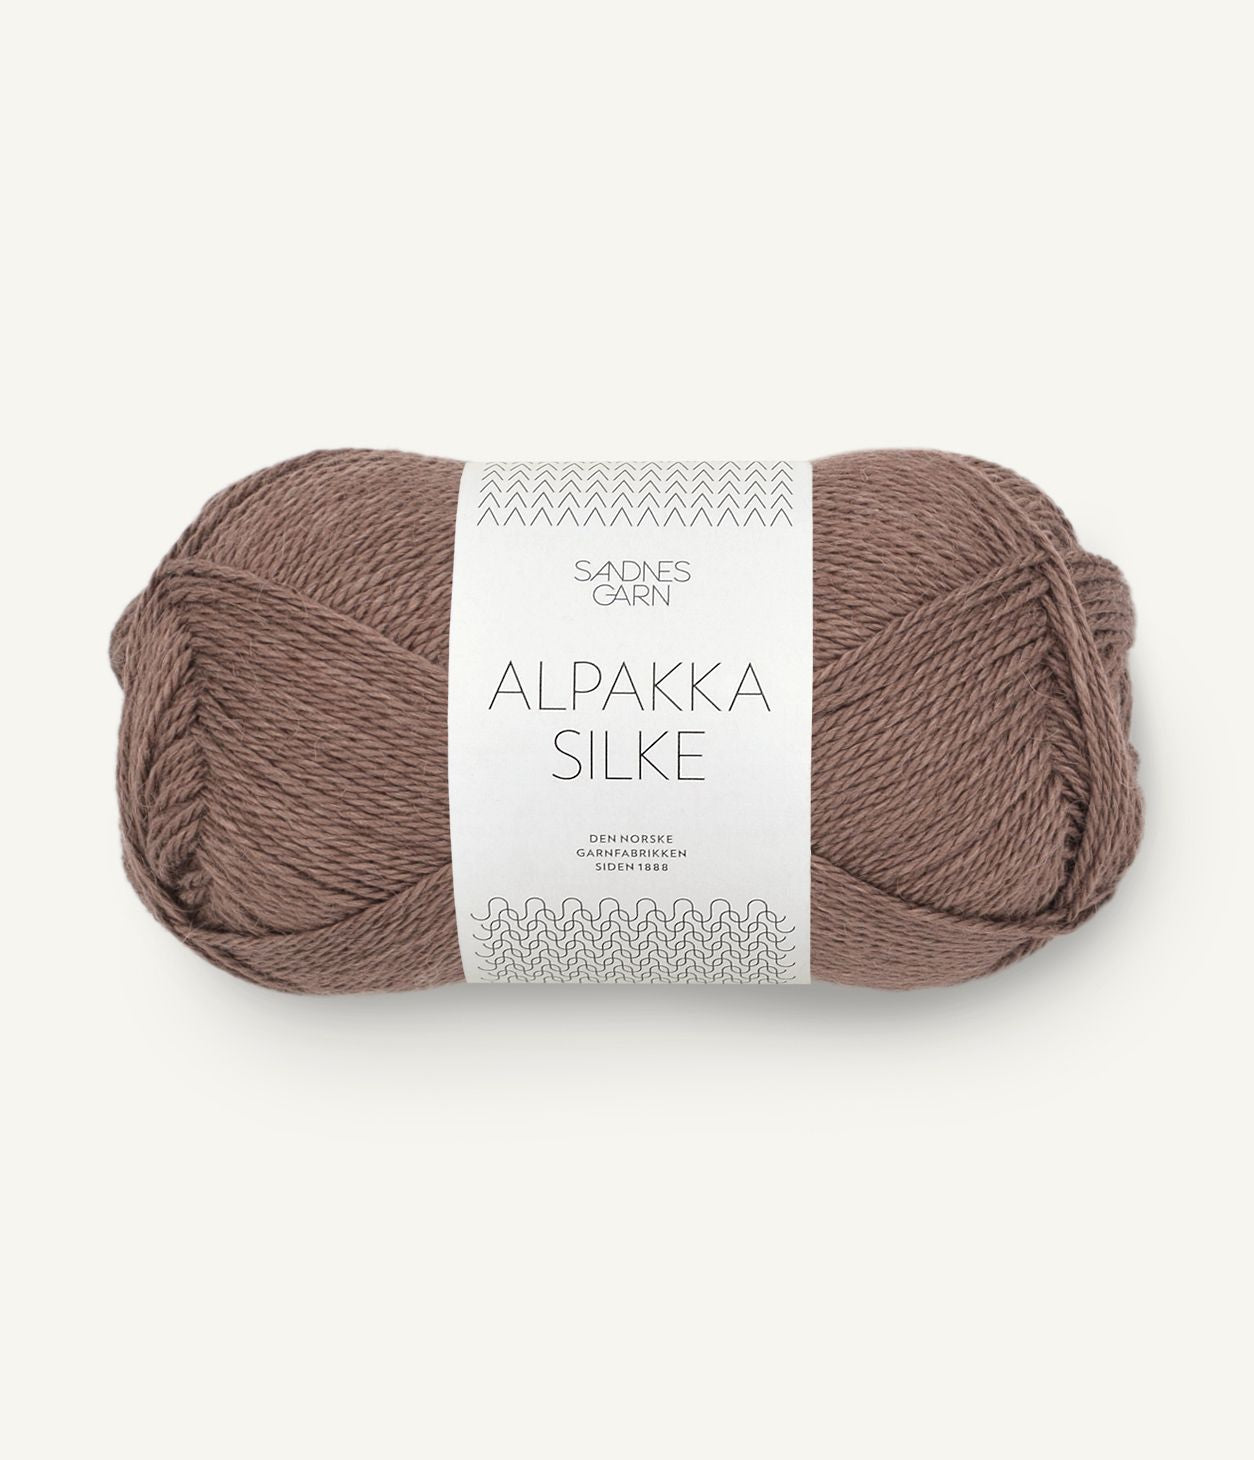 Sandnes Garn Alpakka Silke - 50g